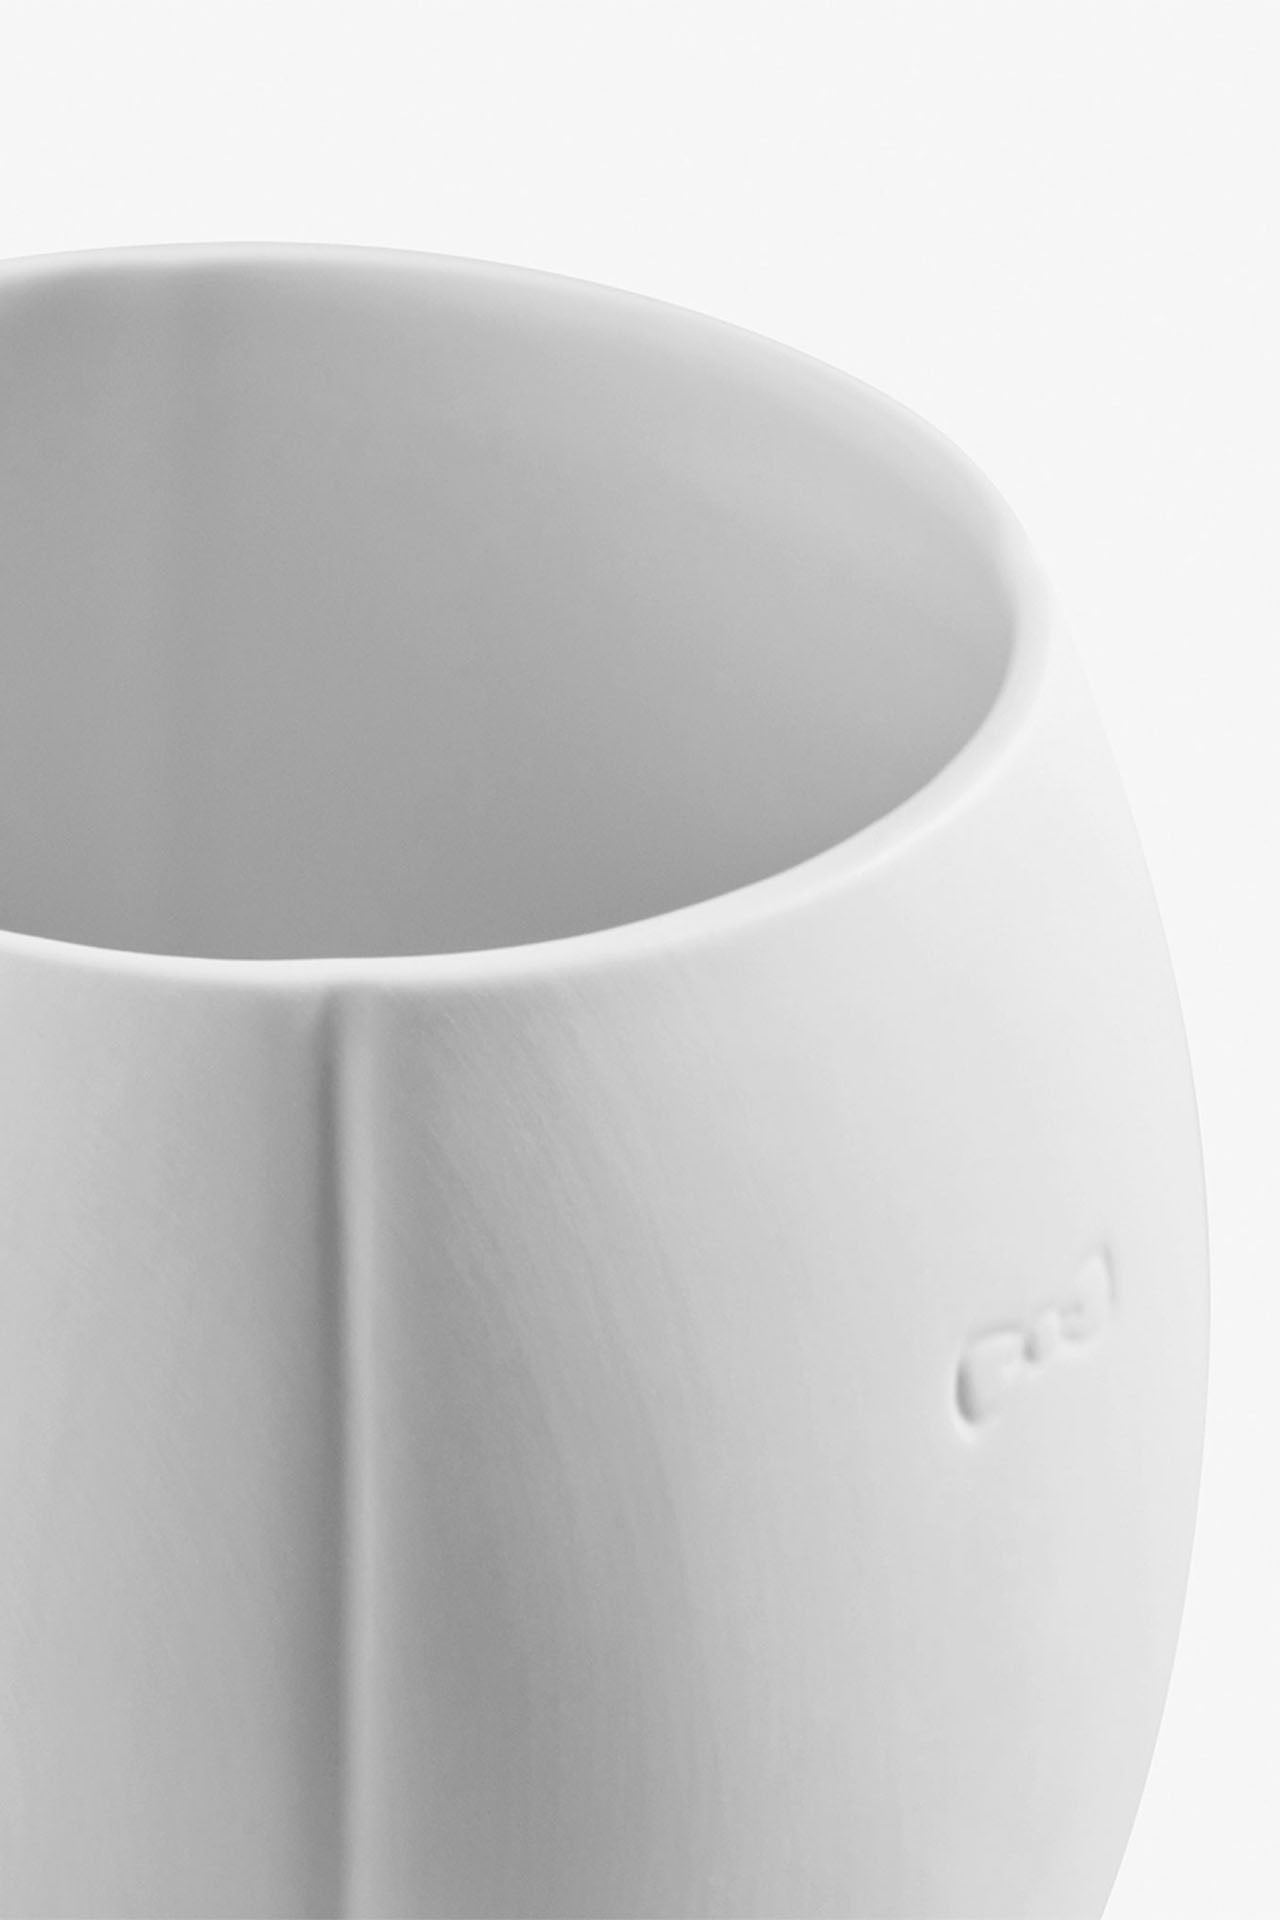 Mug blanc en porcelaine de Limoges - grand modèle